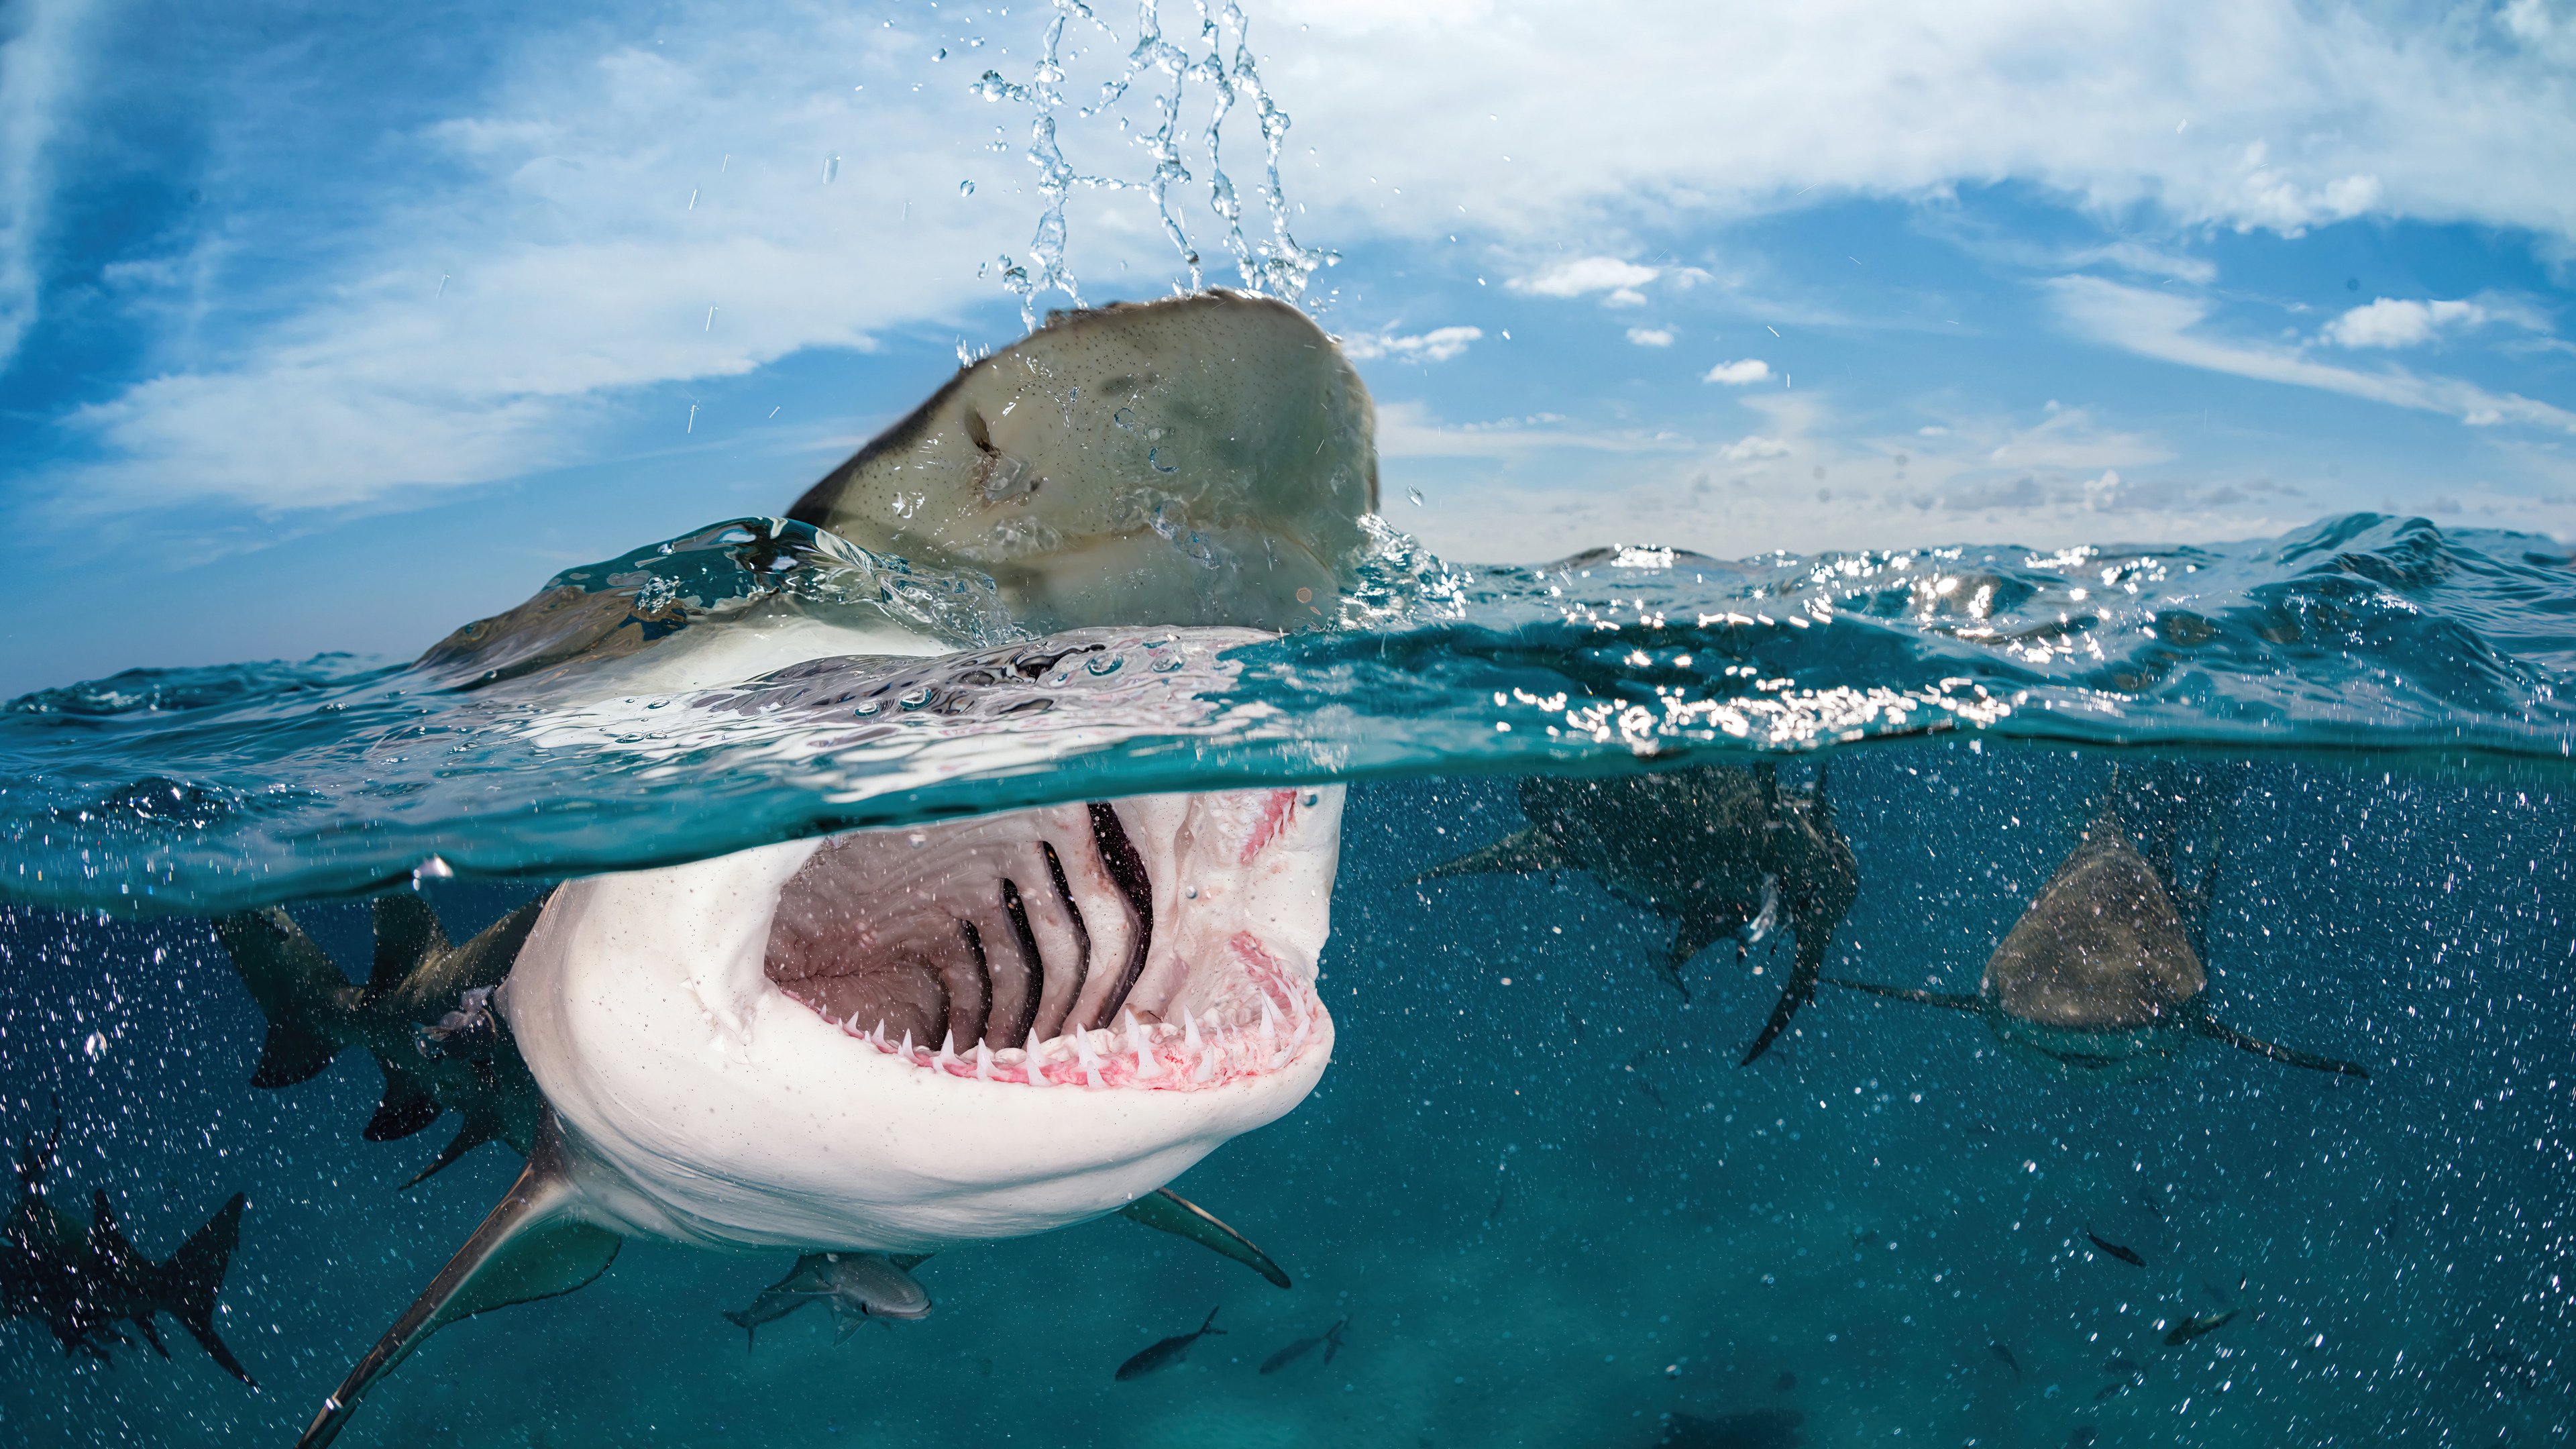 Fondos de pantalla Tiburón bajo el agua